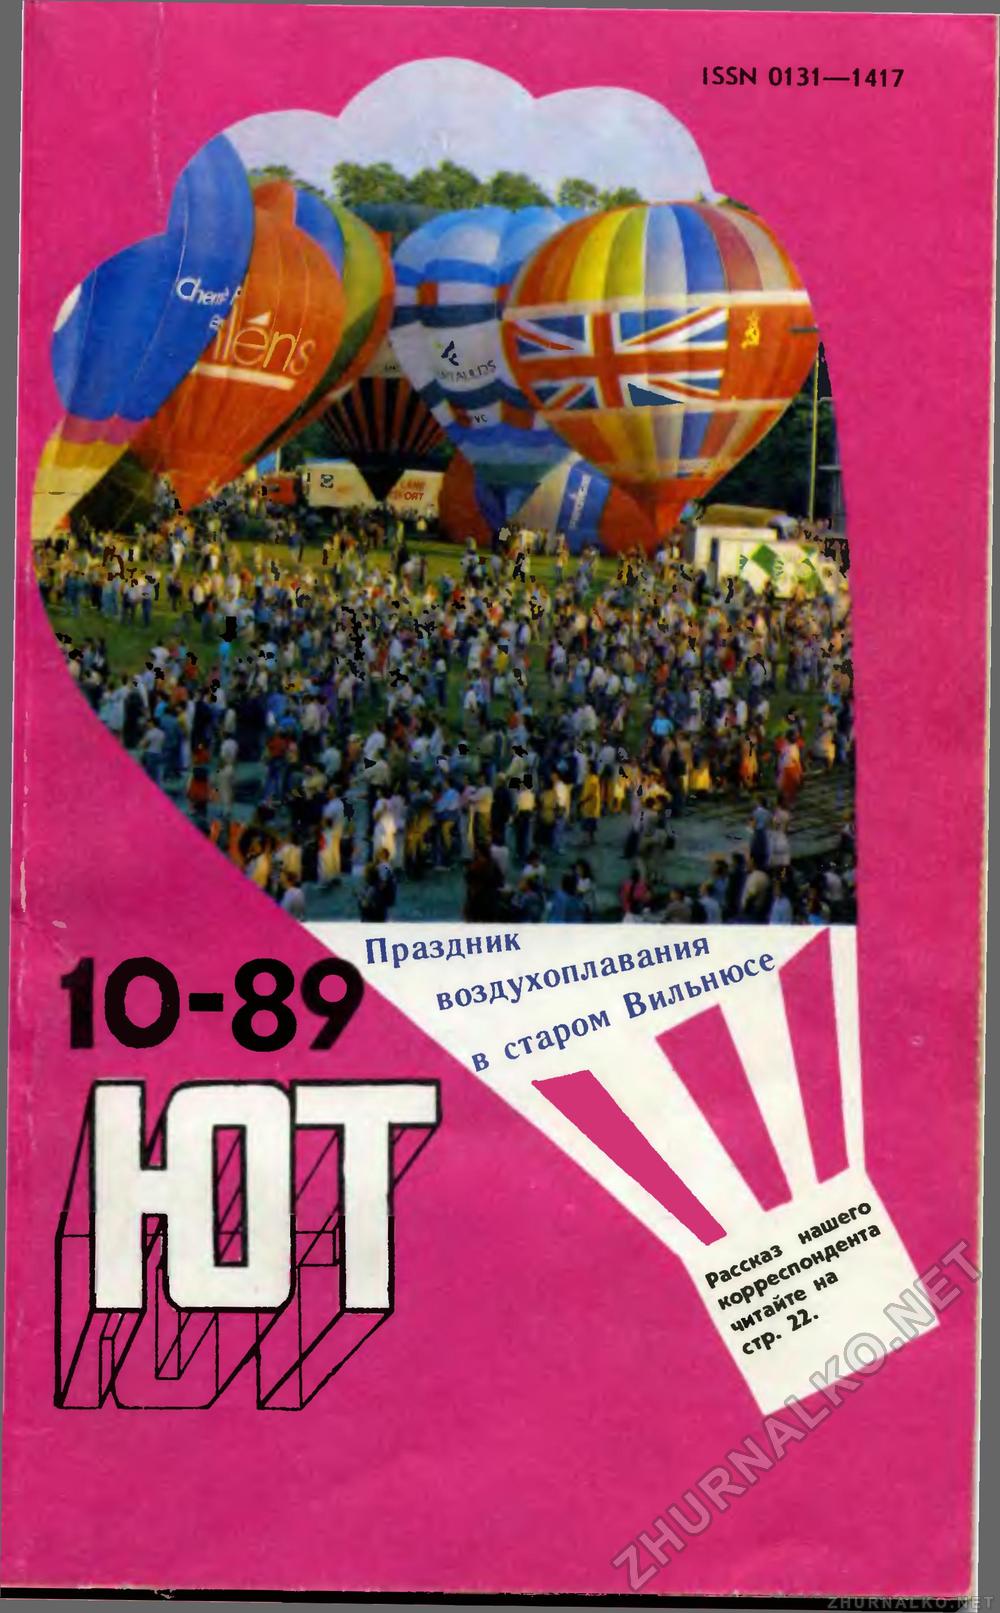   1989-10,  1